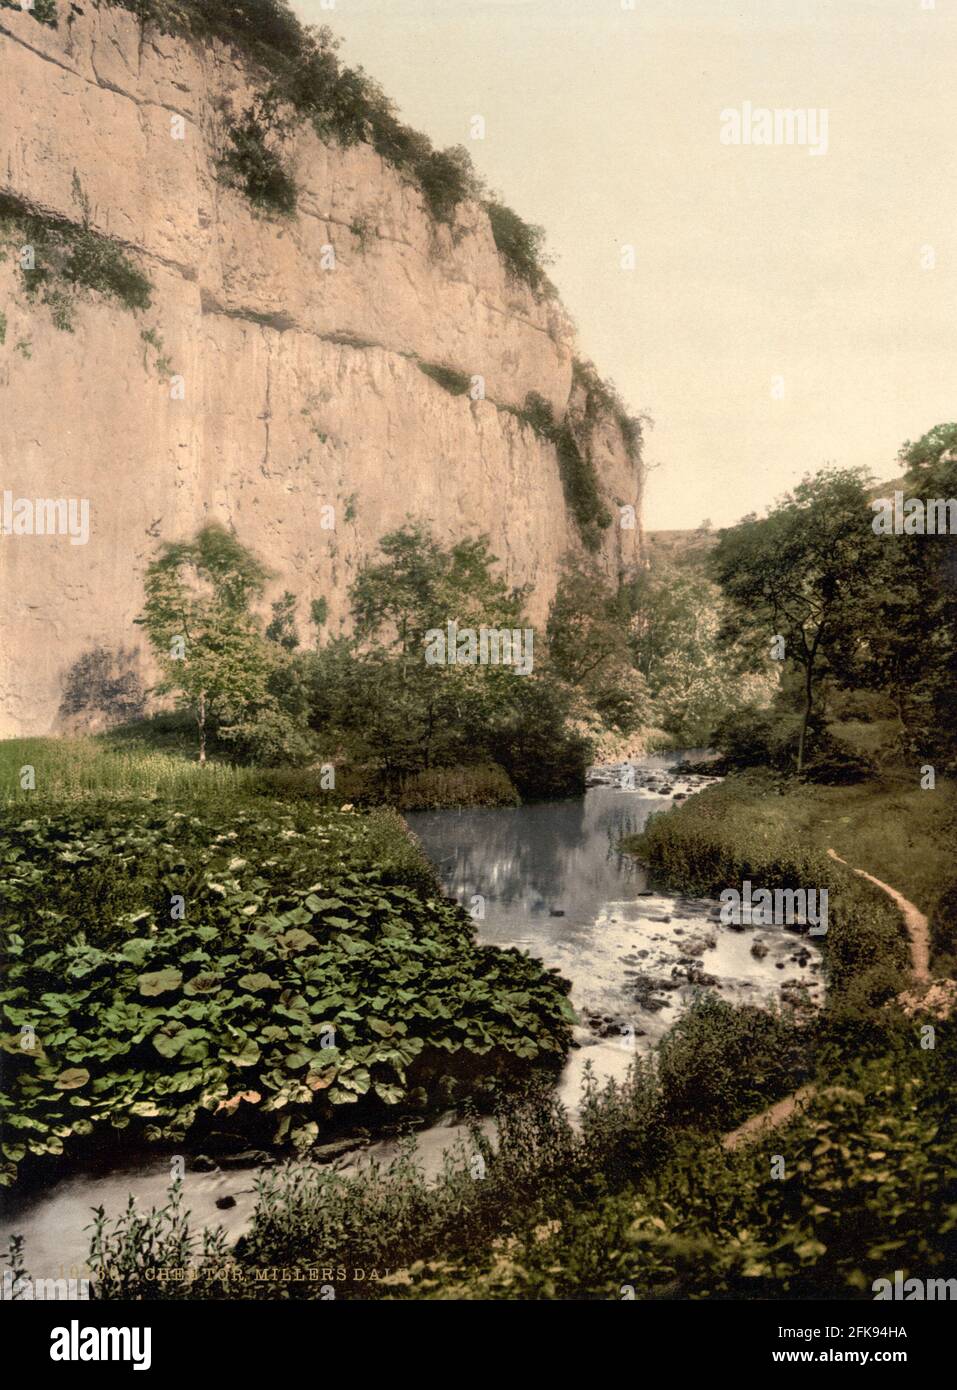 Chee Dale und der Fluss Wye in der Nähe von Buxton, Derbyshire, um 1890-1900 Stockfoto